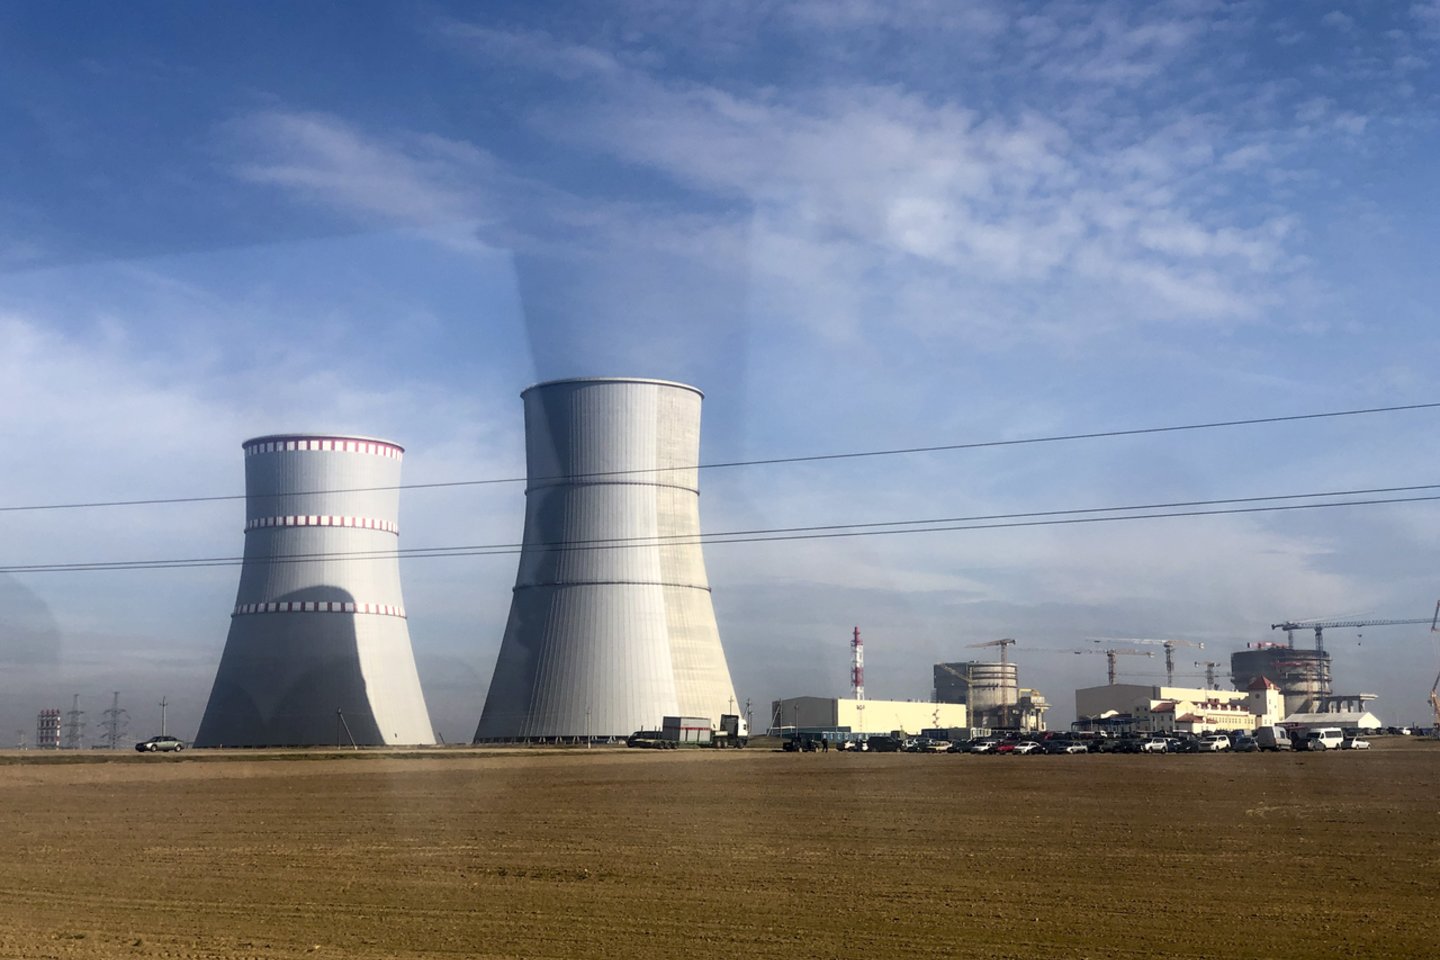 Netoli Lietuvos valstybinės statoma pirmoji Baltarusijoje branduolinė jėgainė turės du vienodos galios rusiško VVER projekto reaktorius – po beveik 1,2 gigavato.<br>V.Ščiavinsko nuotr.